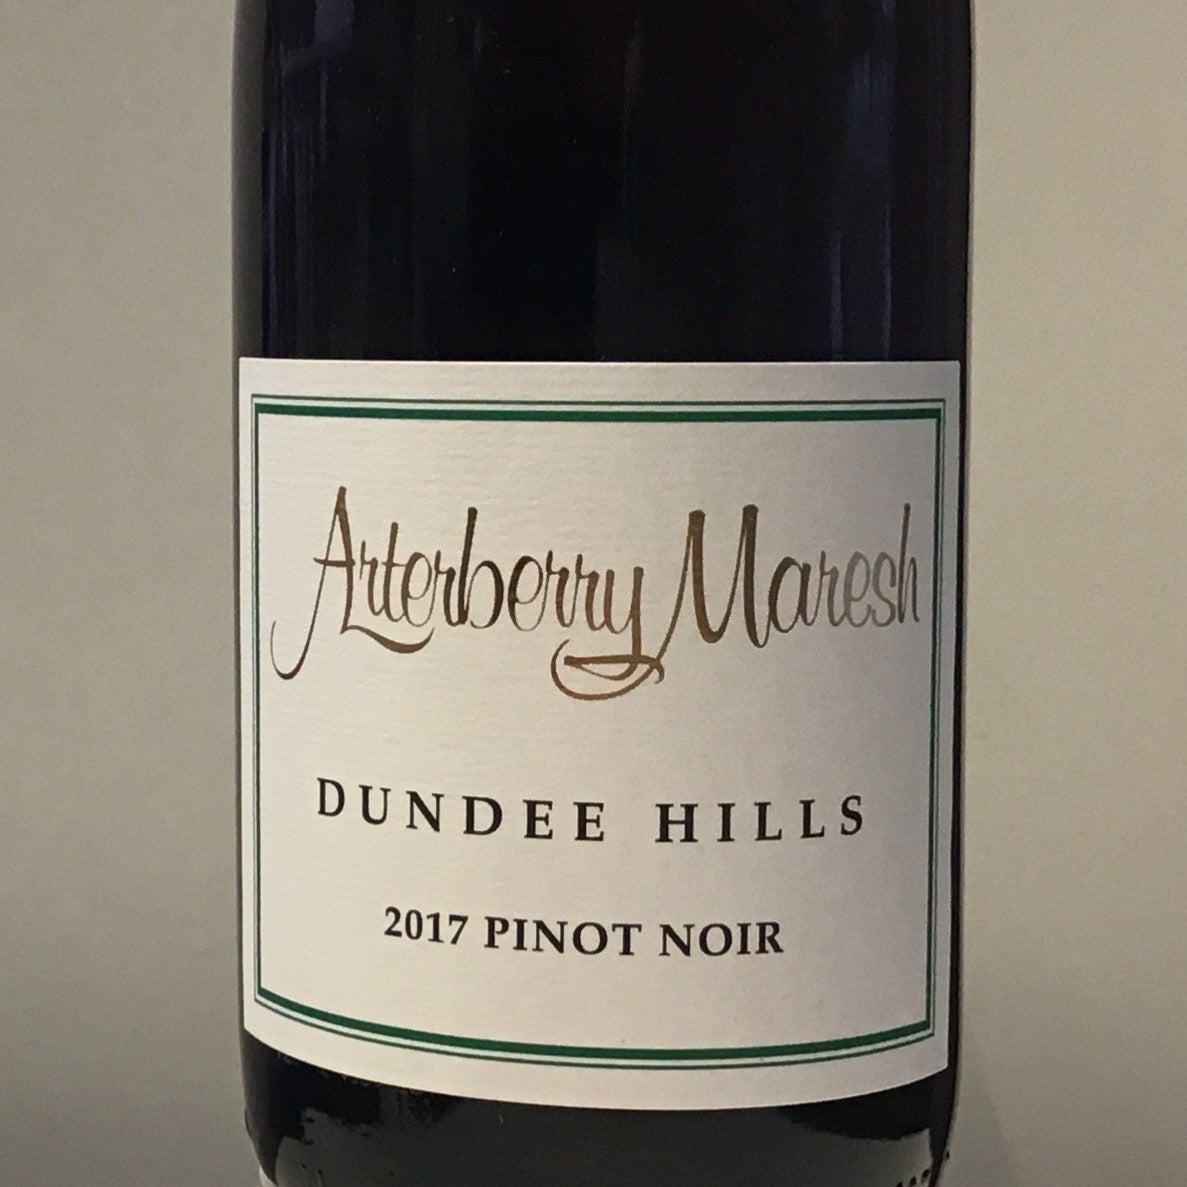 Arterberry Maresh - Dundee Hills - Pinot Noir